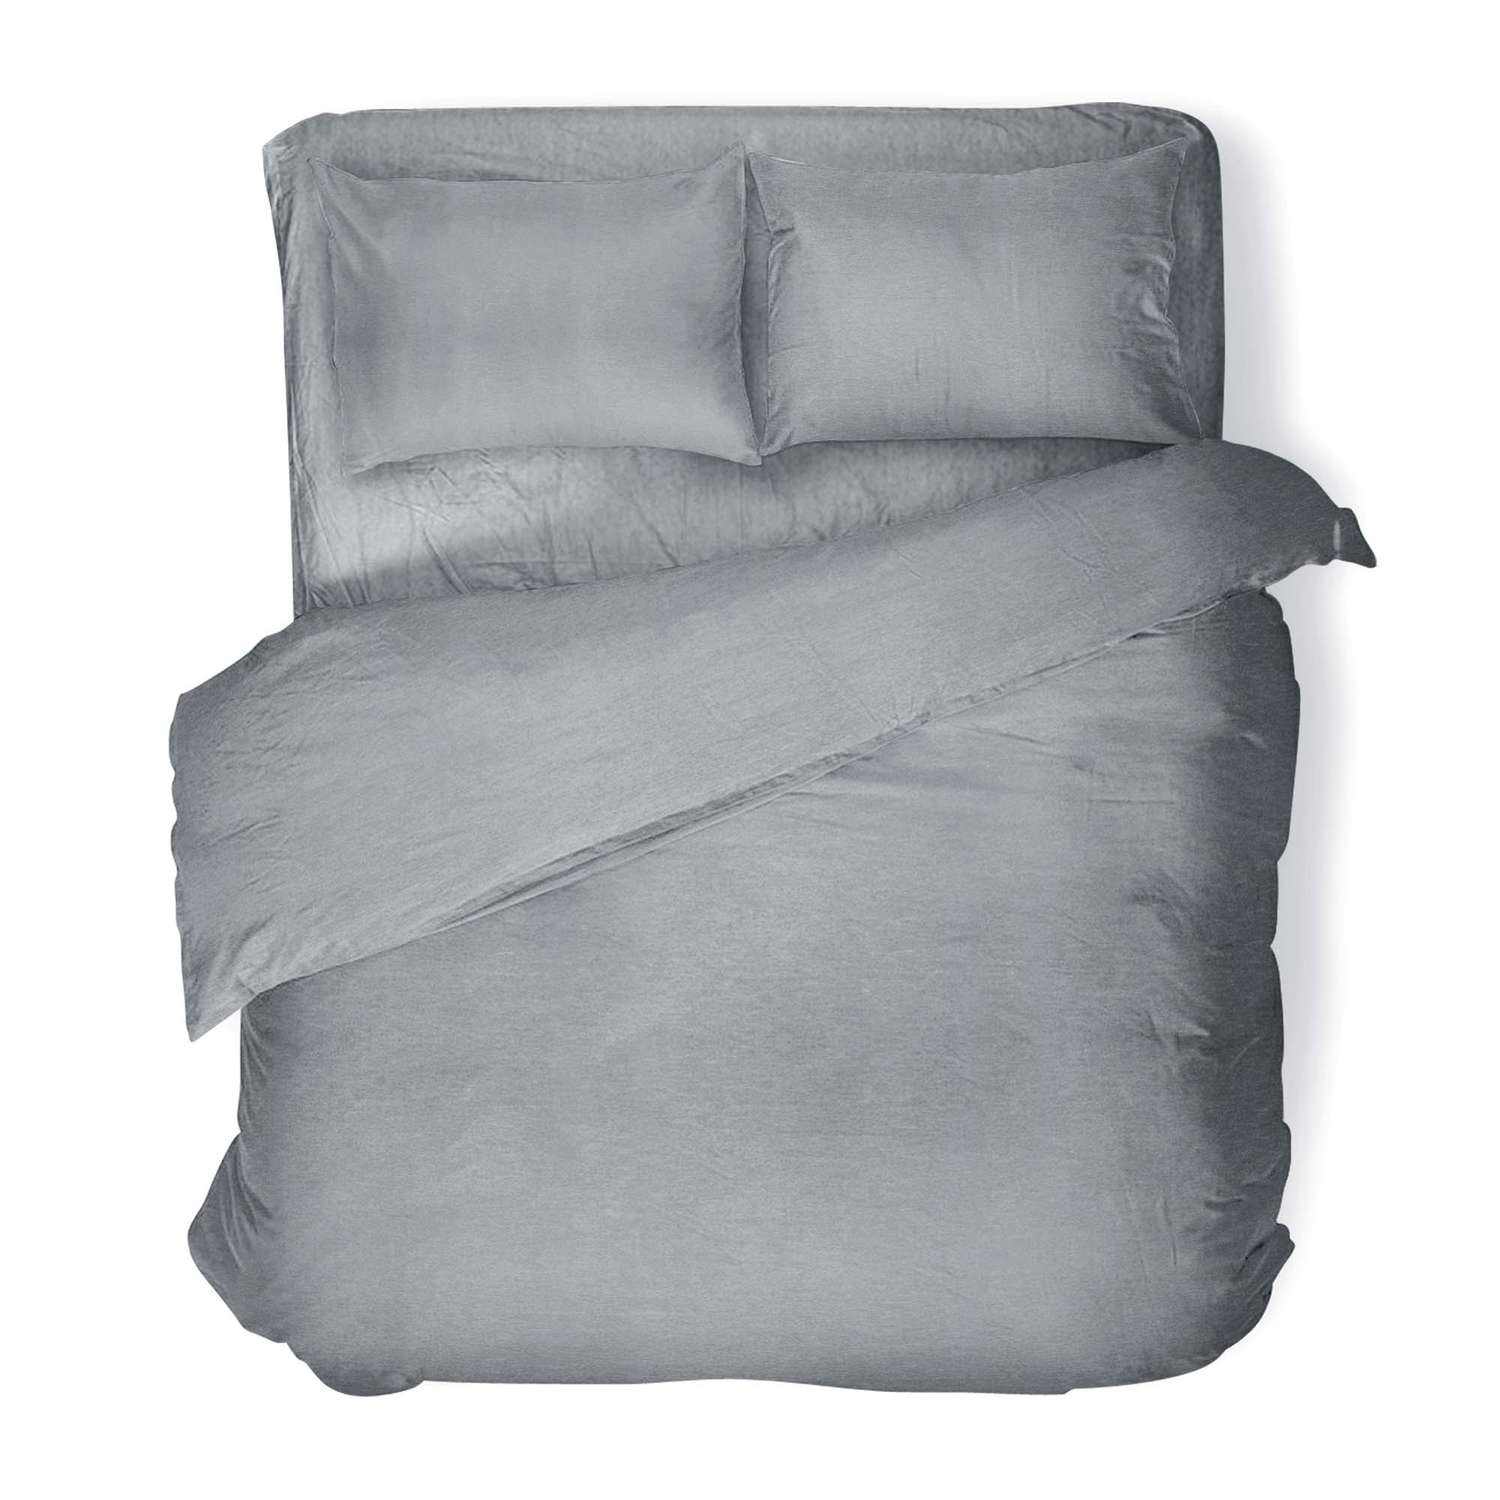 Комплект постельного белья Absolut 1.5СП Silver наволочки 70х70см меланж - фото 1